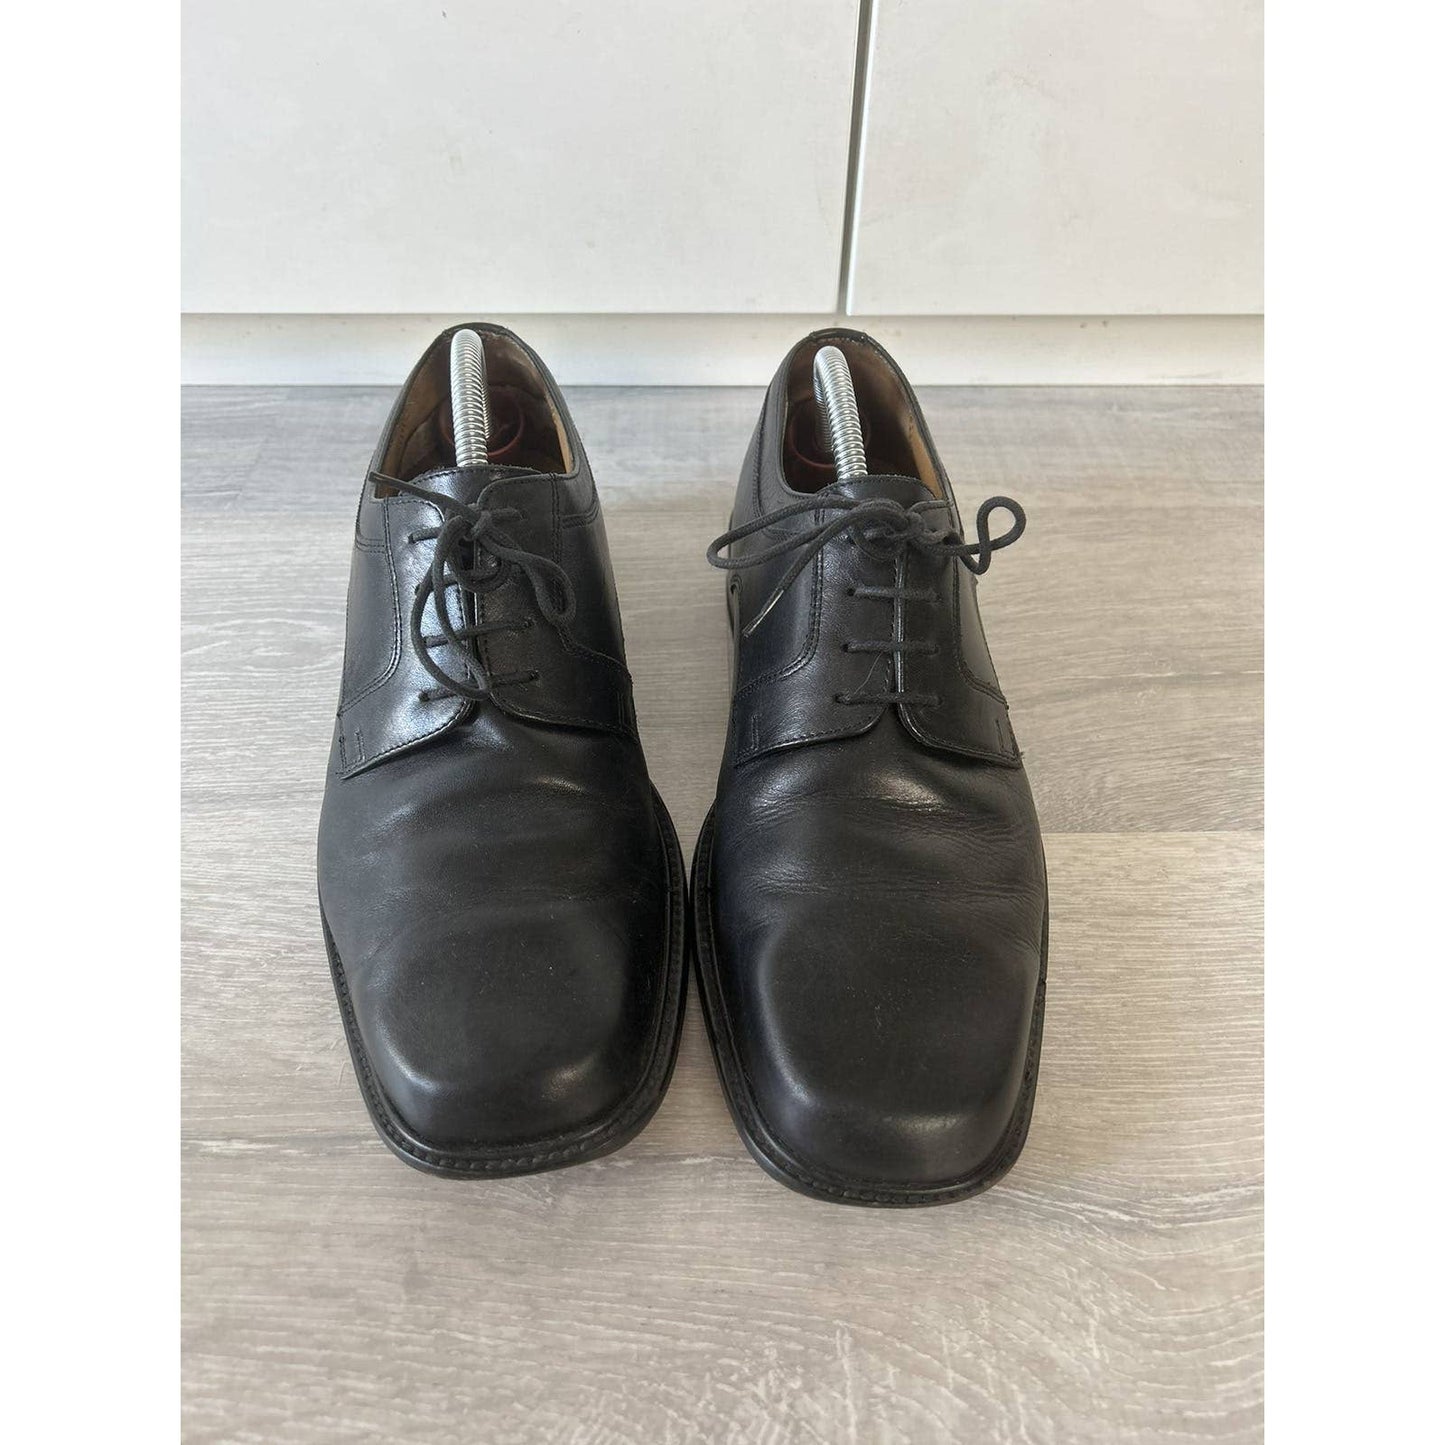 Clarks black leather shoes vintage